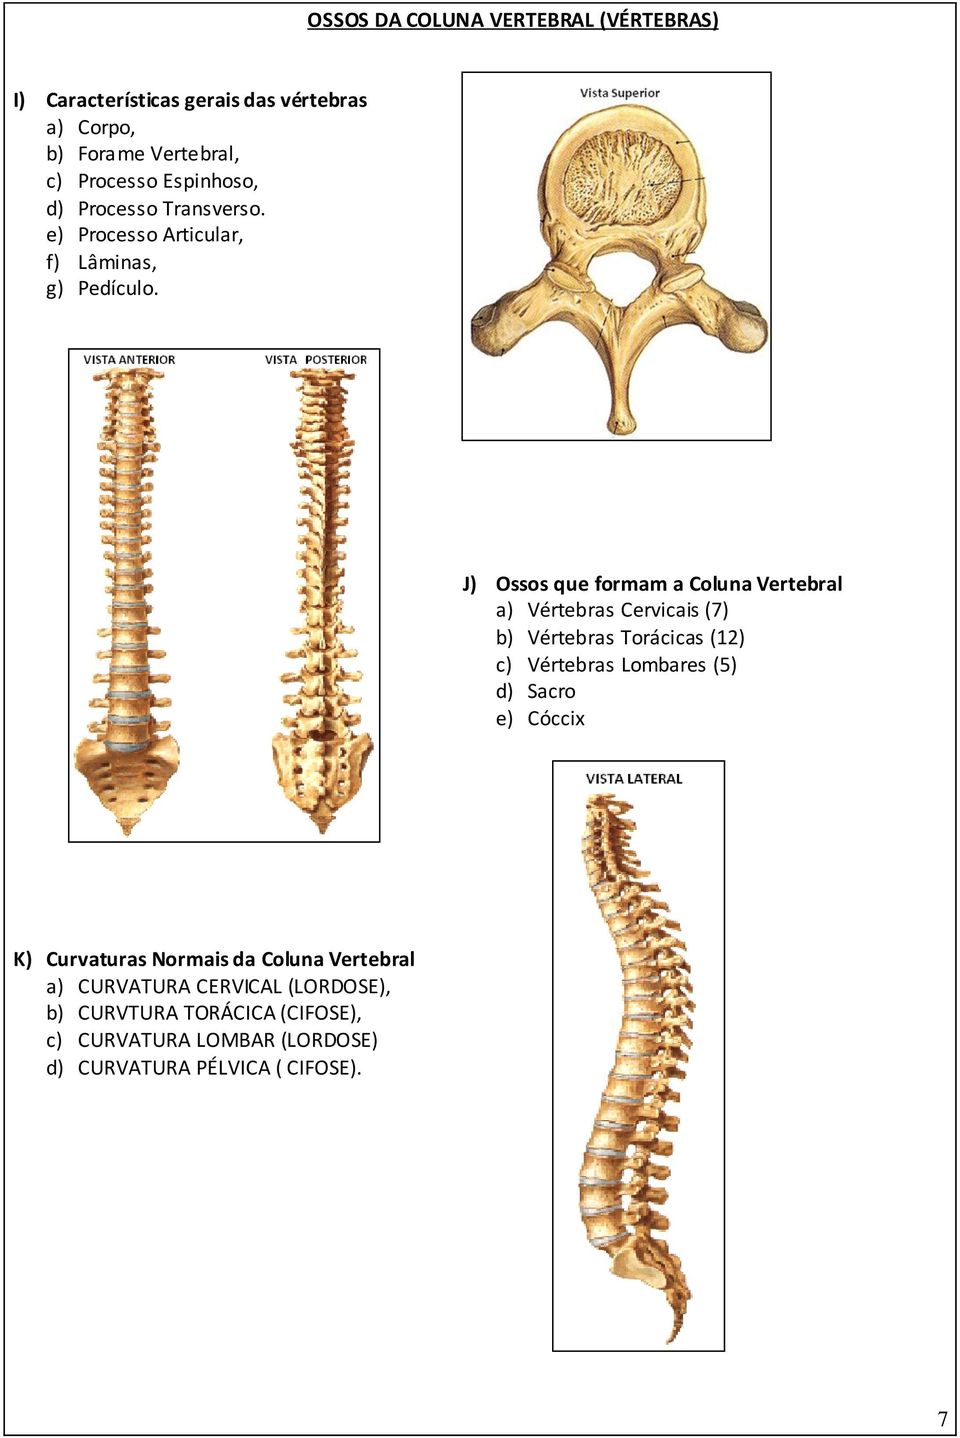 J) Ossos que formam a Coluna Vertebral a) Vértebras Cervicais (7) b) Vértebras Torácicas (12) c) Vértebras Lombares (5) d)